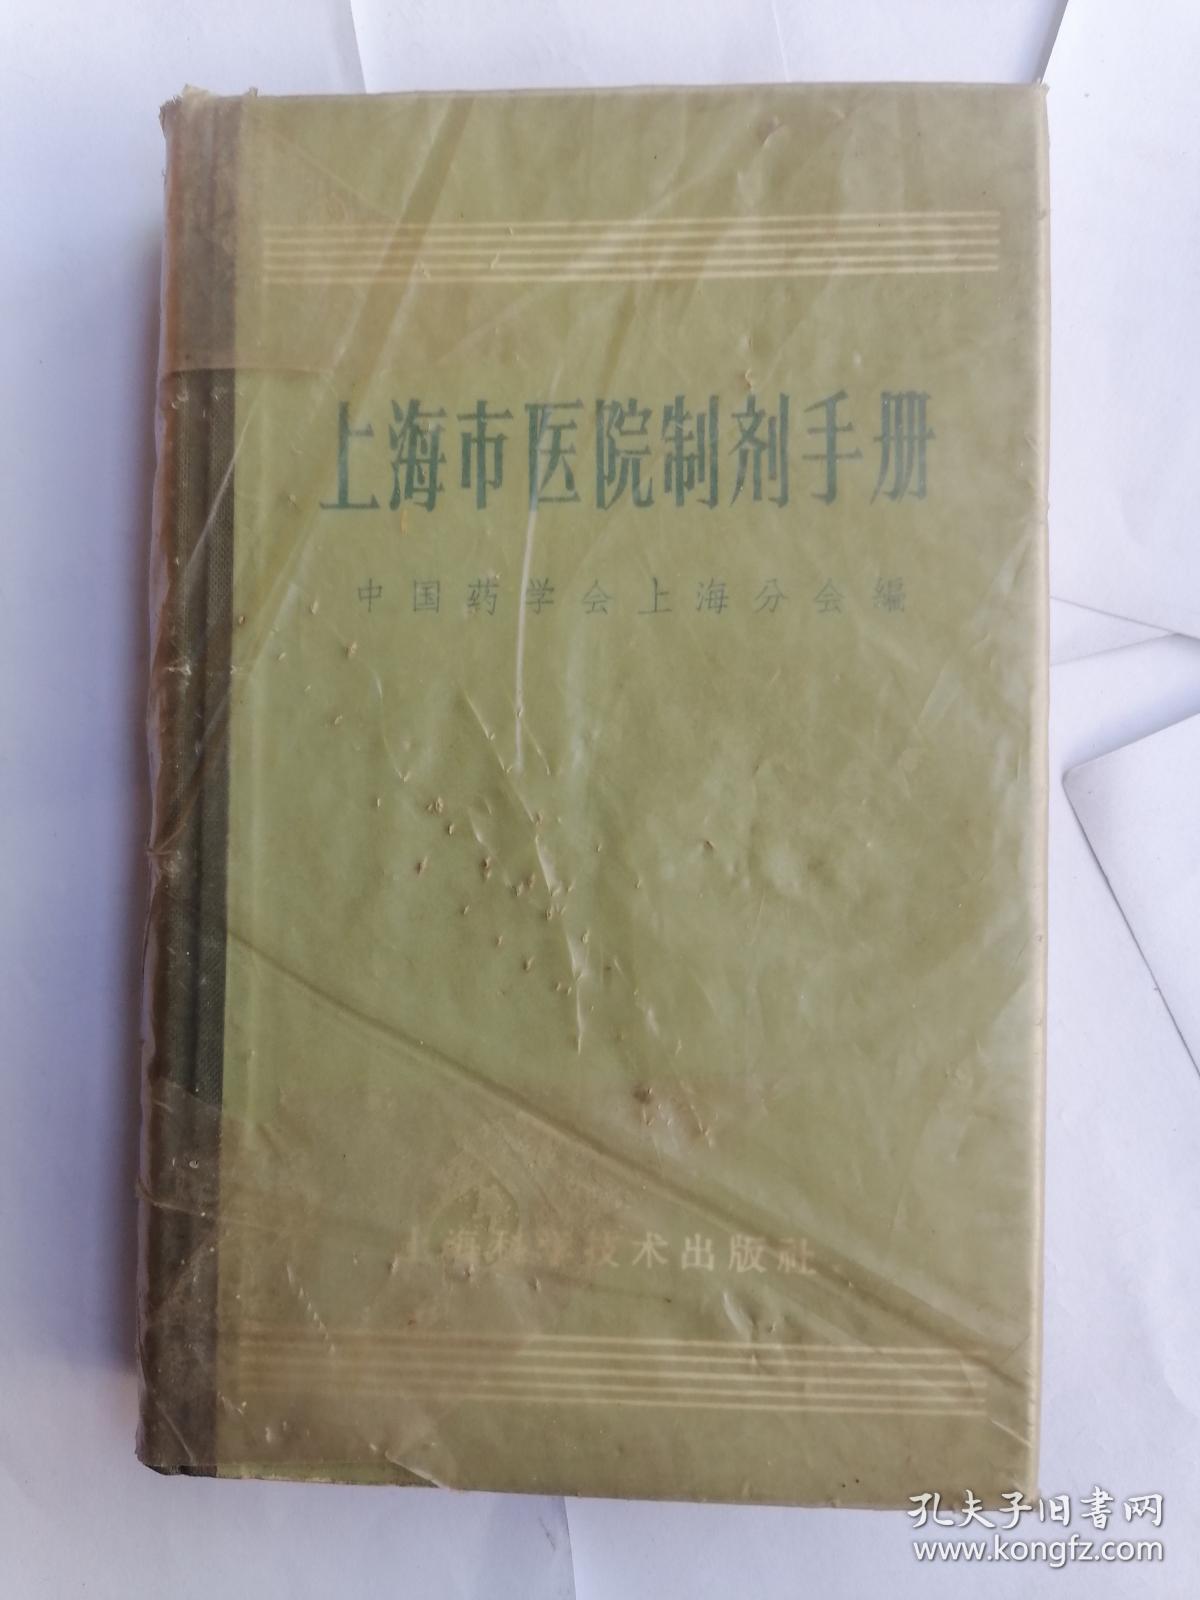 上海市医院制剂手册